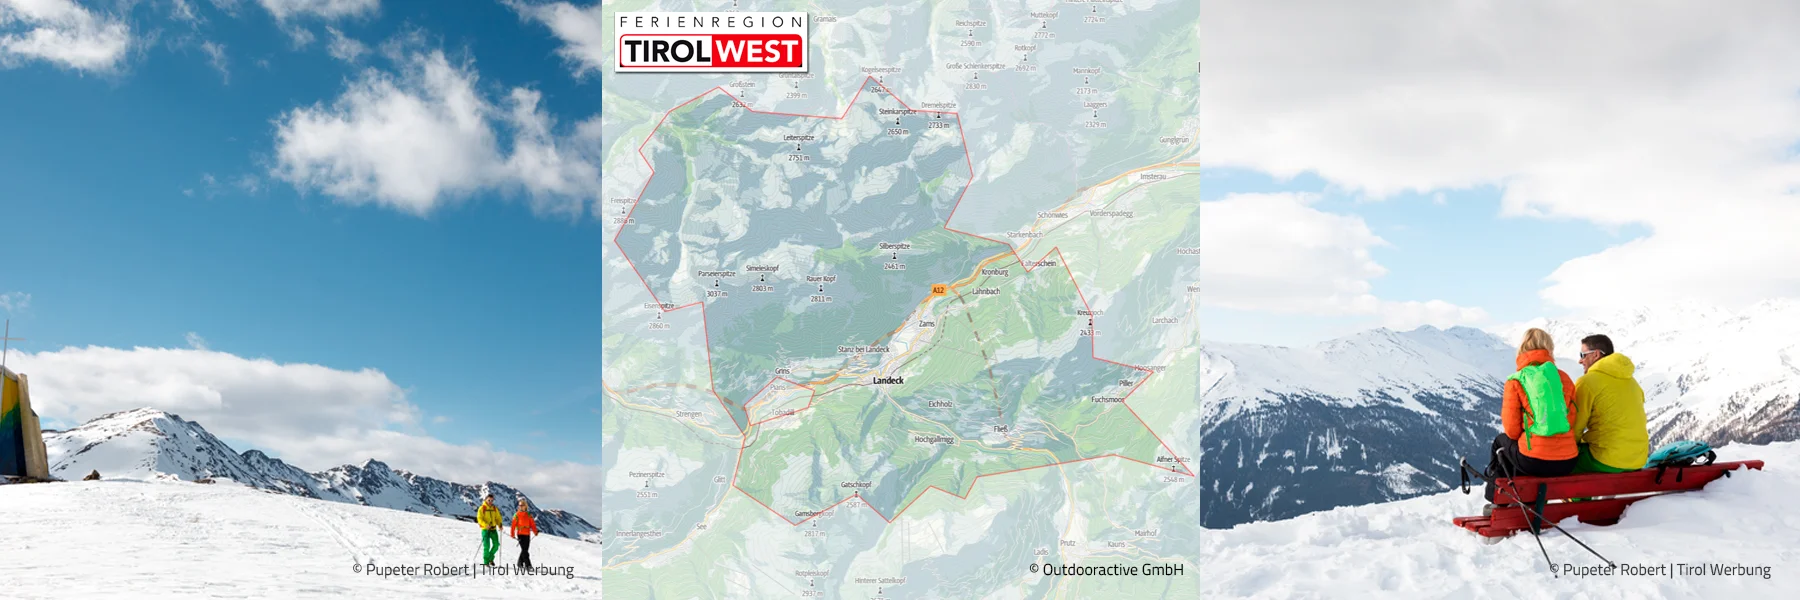 TirolWest